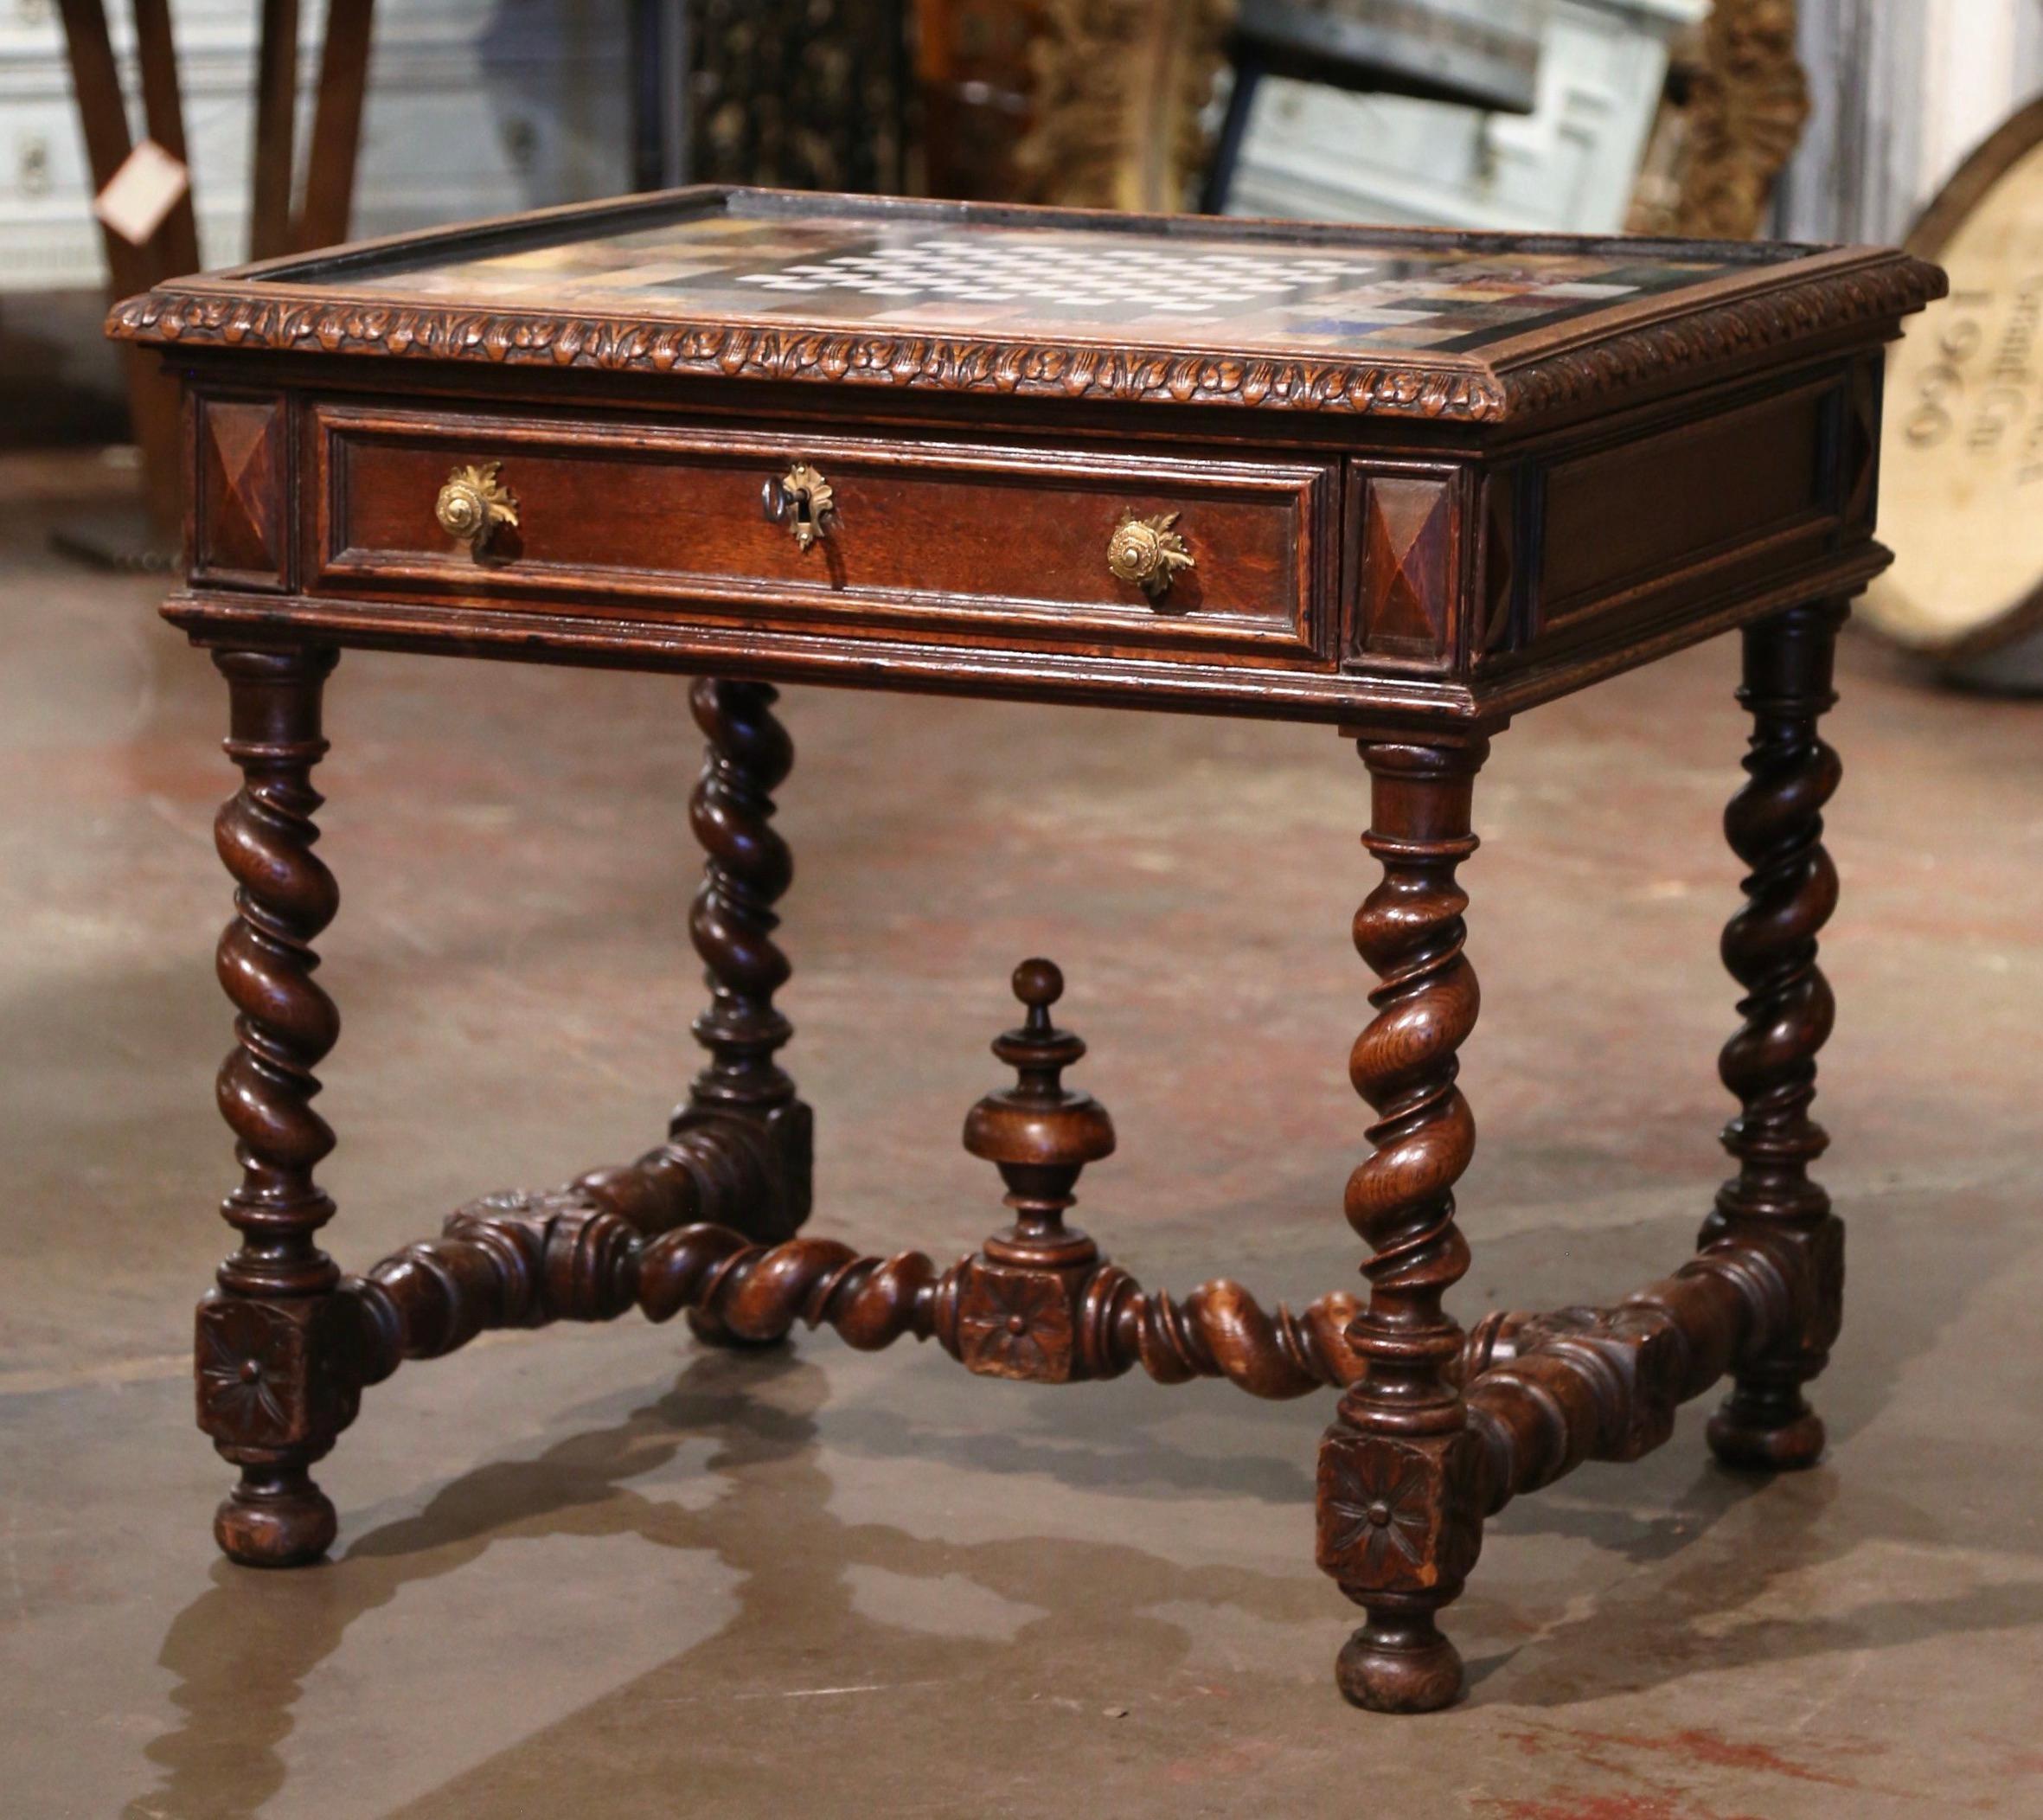 Dekorieren Sie ein DEN oder ein Spielzimmer mit diesem eleganten antiken Kartentisch. Der um 1780 in Südfrankreich gefertigte Tisch steht auf dicken, mit rautenförmigen Medaillons an den Schultern verzierten Gerstenknotenbeinen, die an der Basis mit